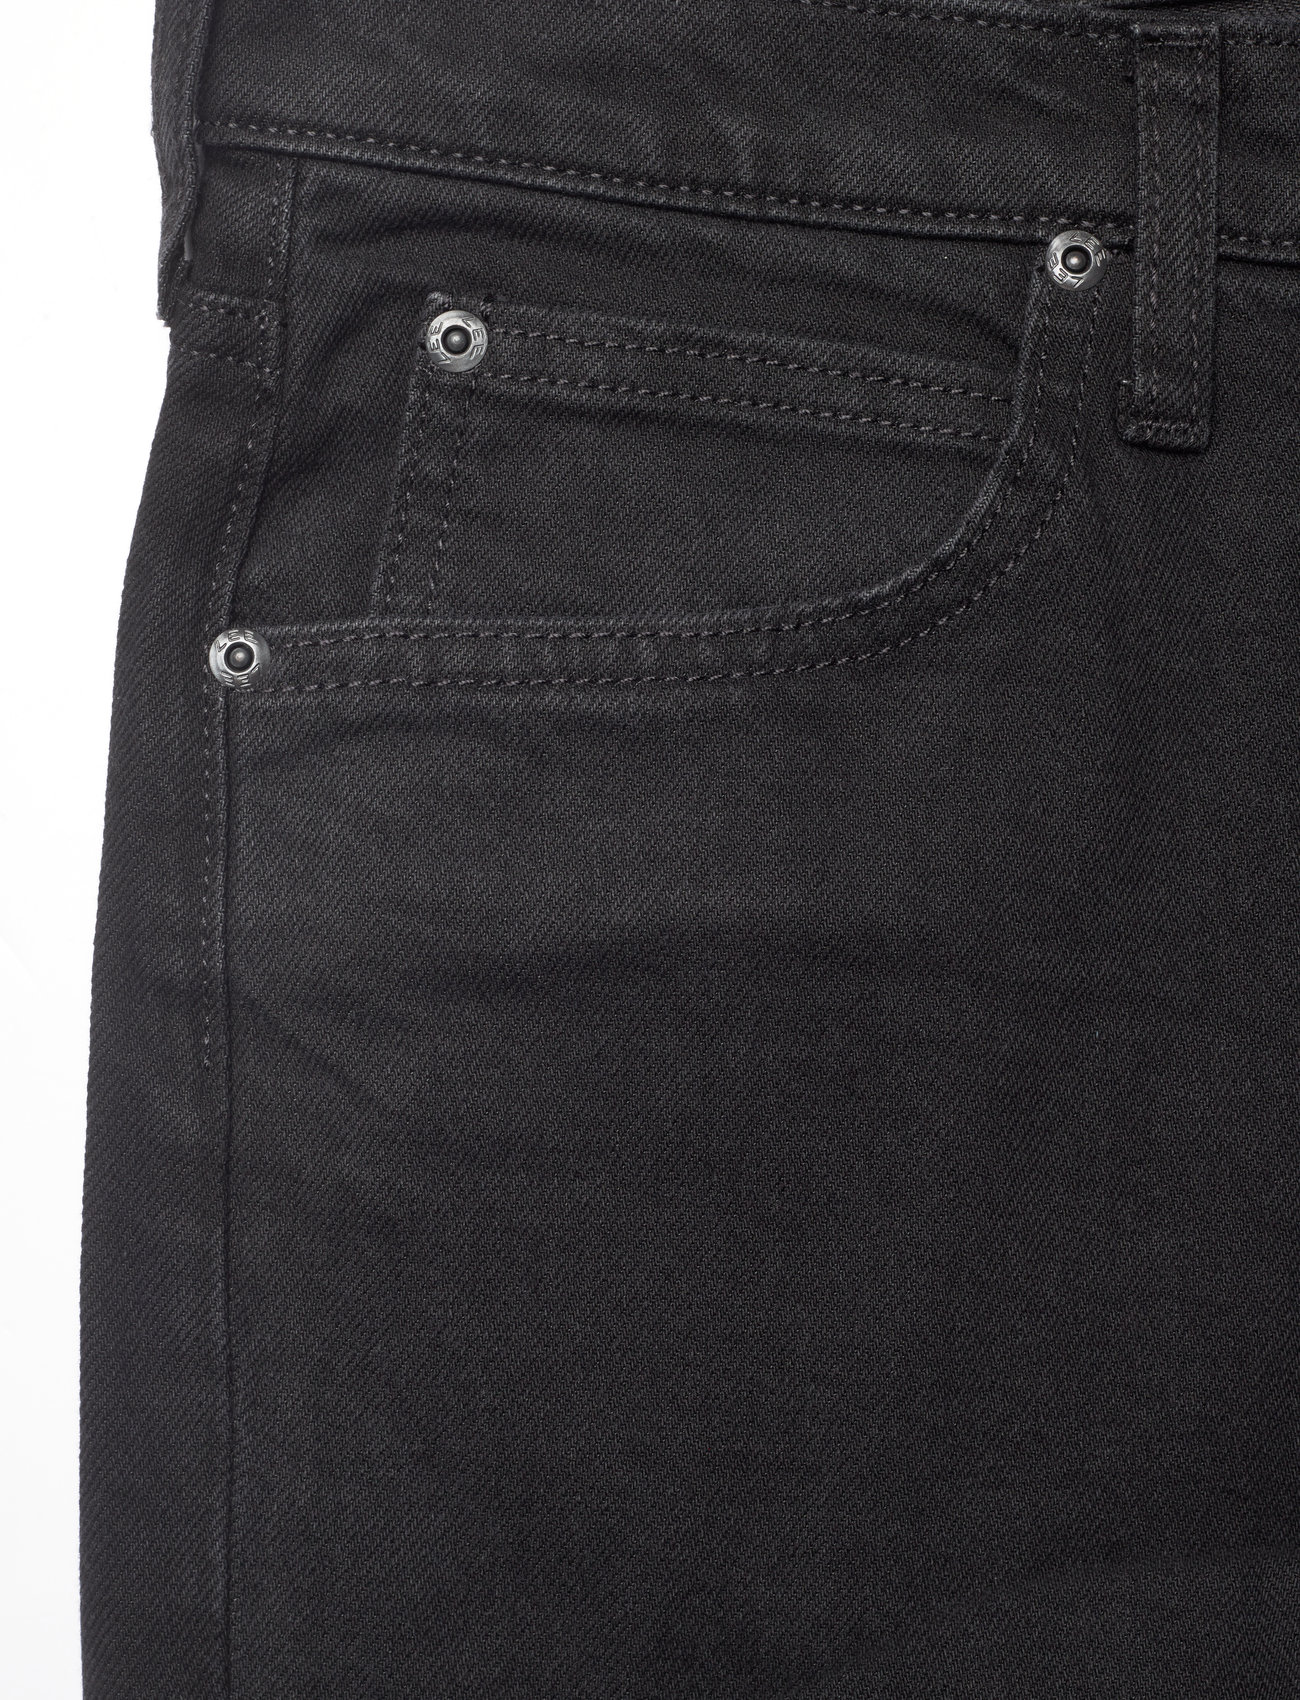 Lee Jeans - WEST - Įprasto kirpimo džinsai - black rinse - 1